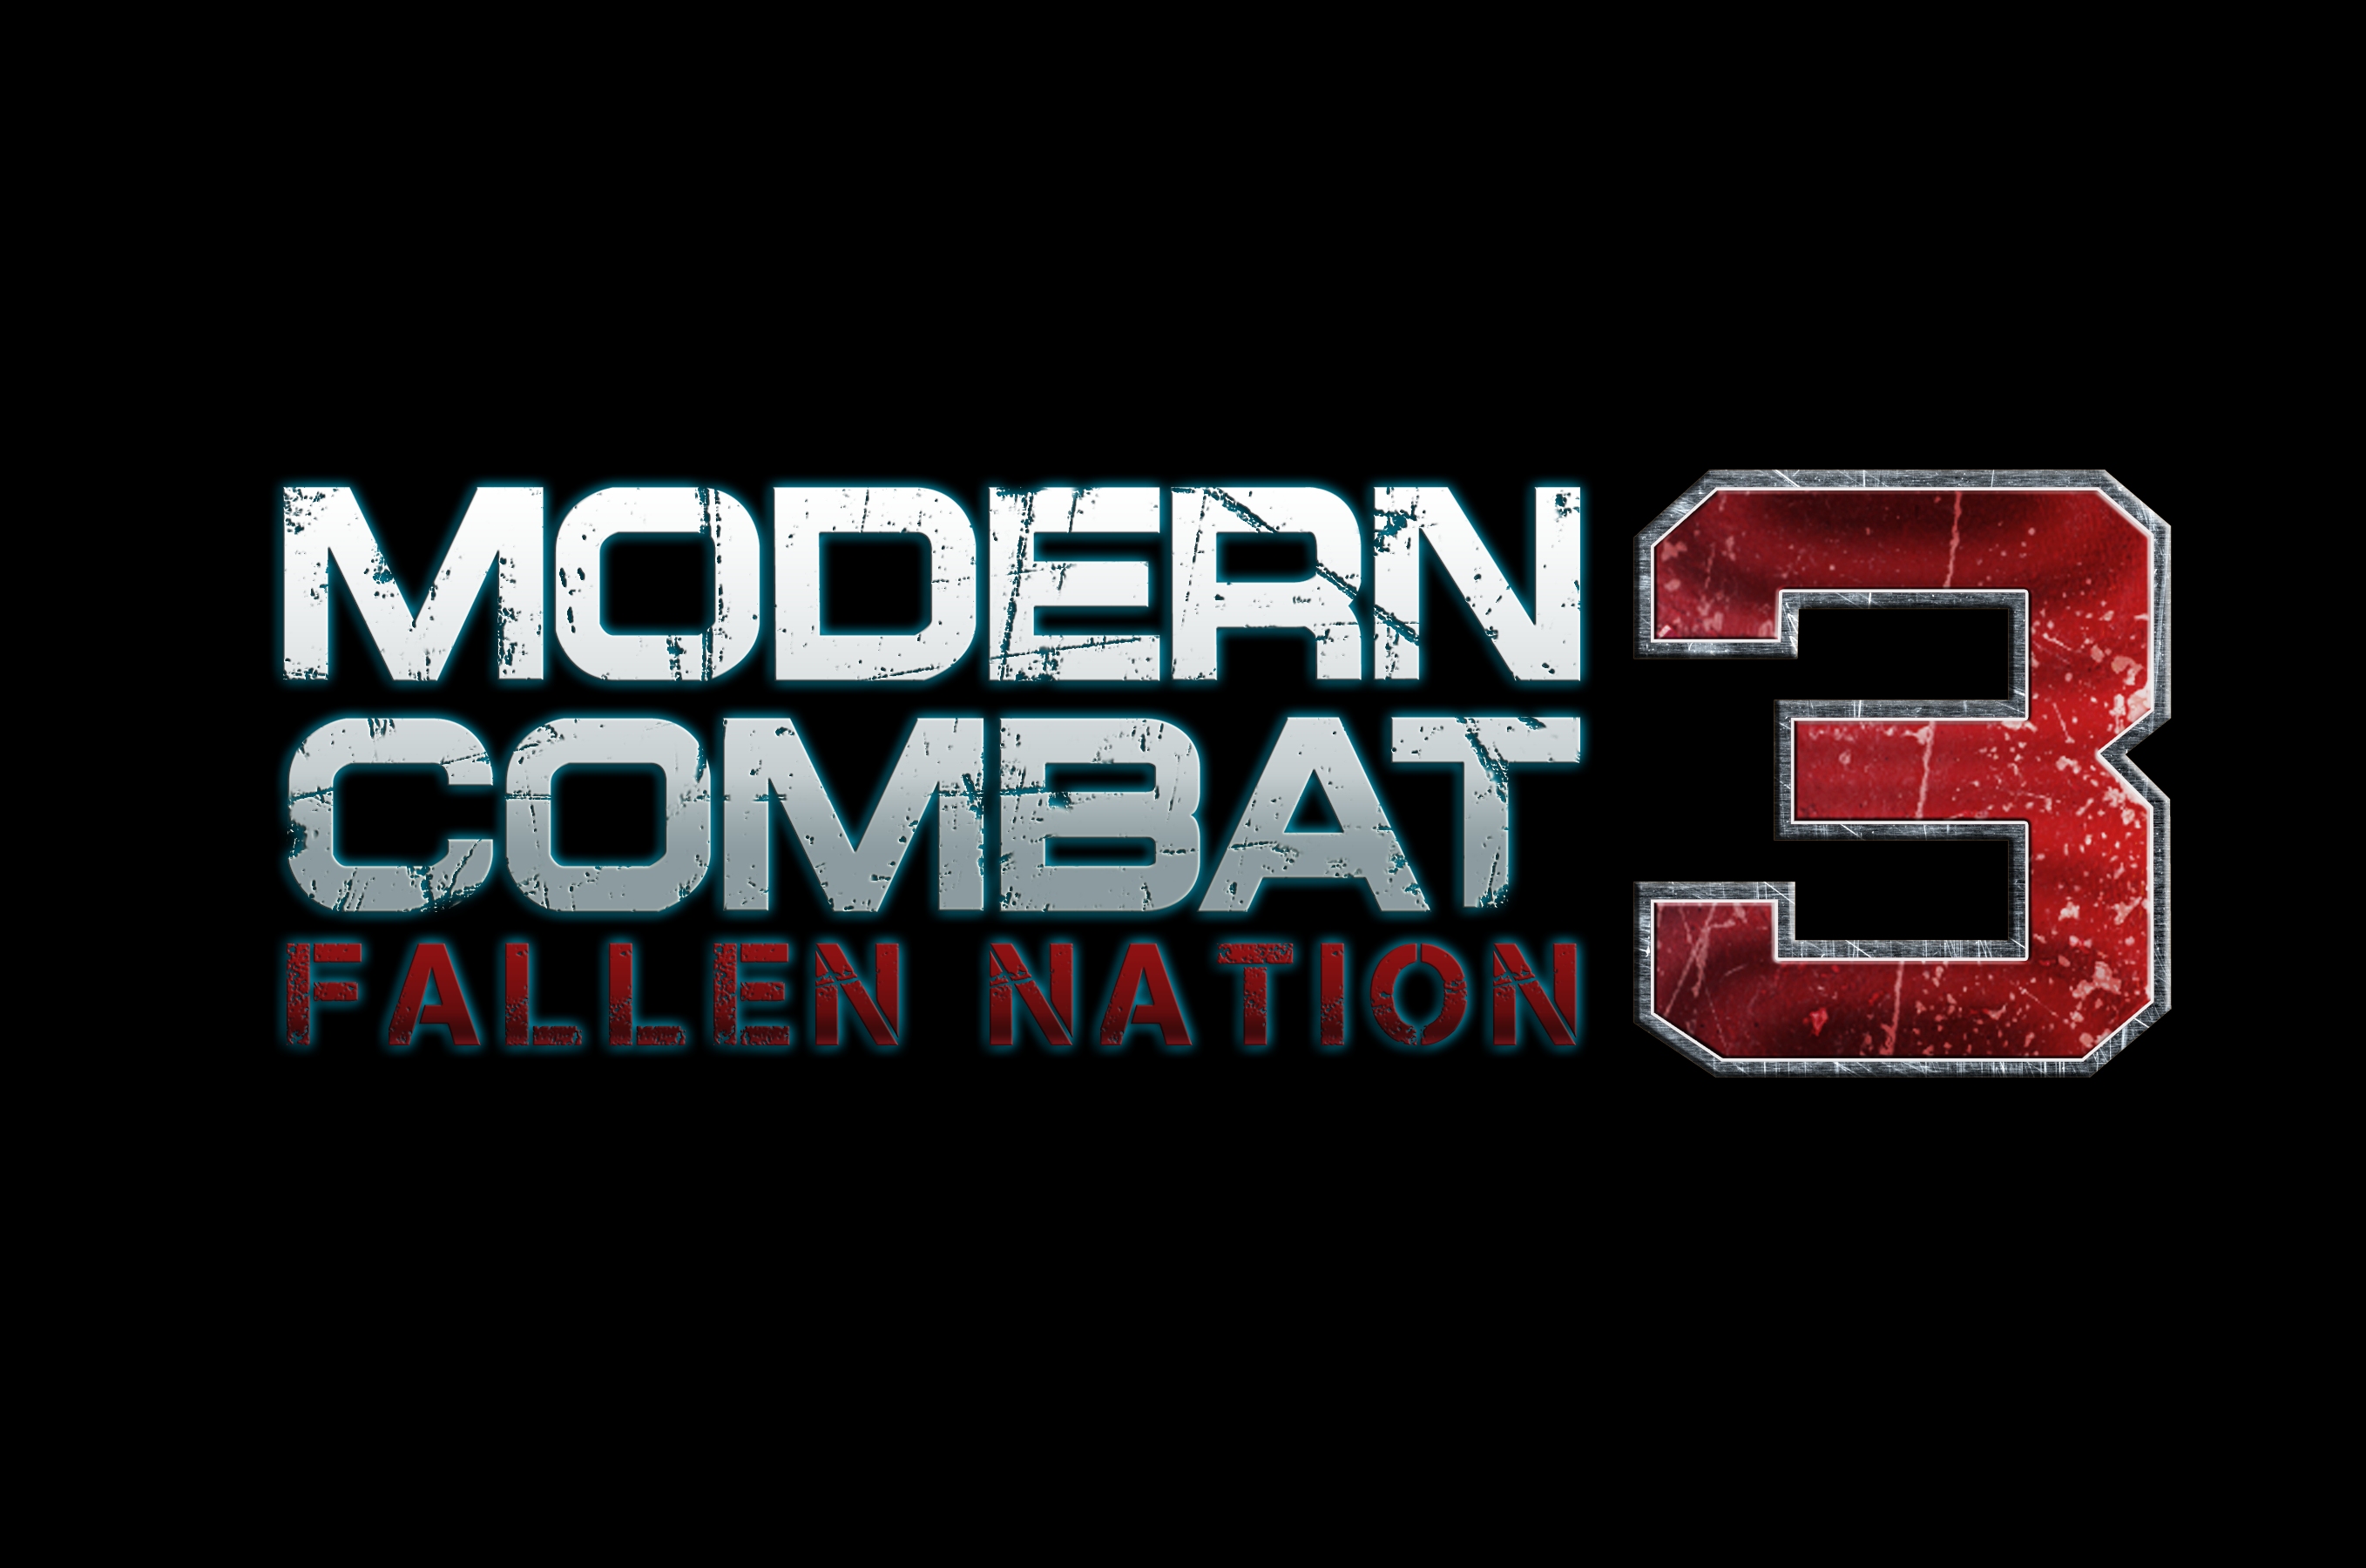 Boîte de Modern Combat 3 : Fallen Nation